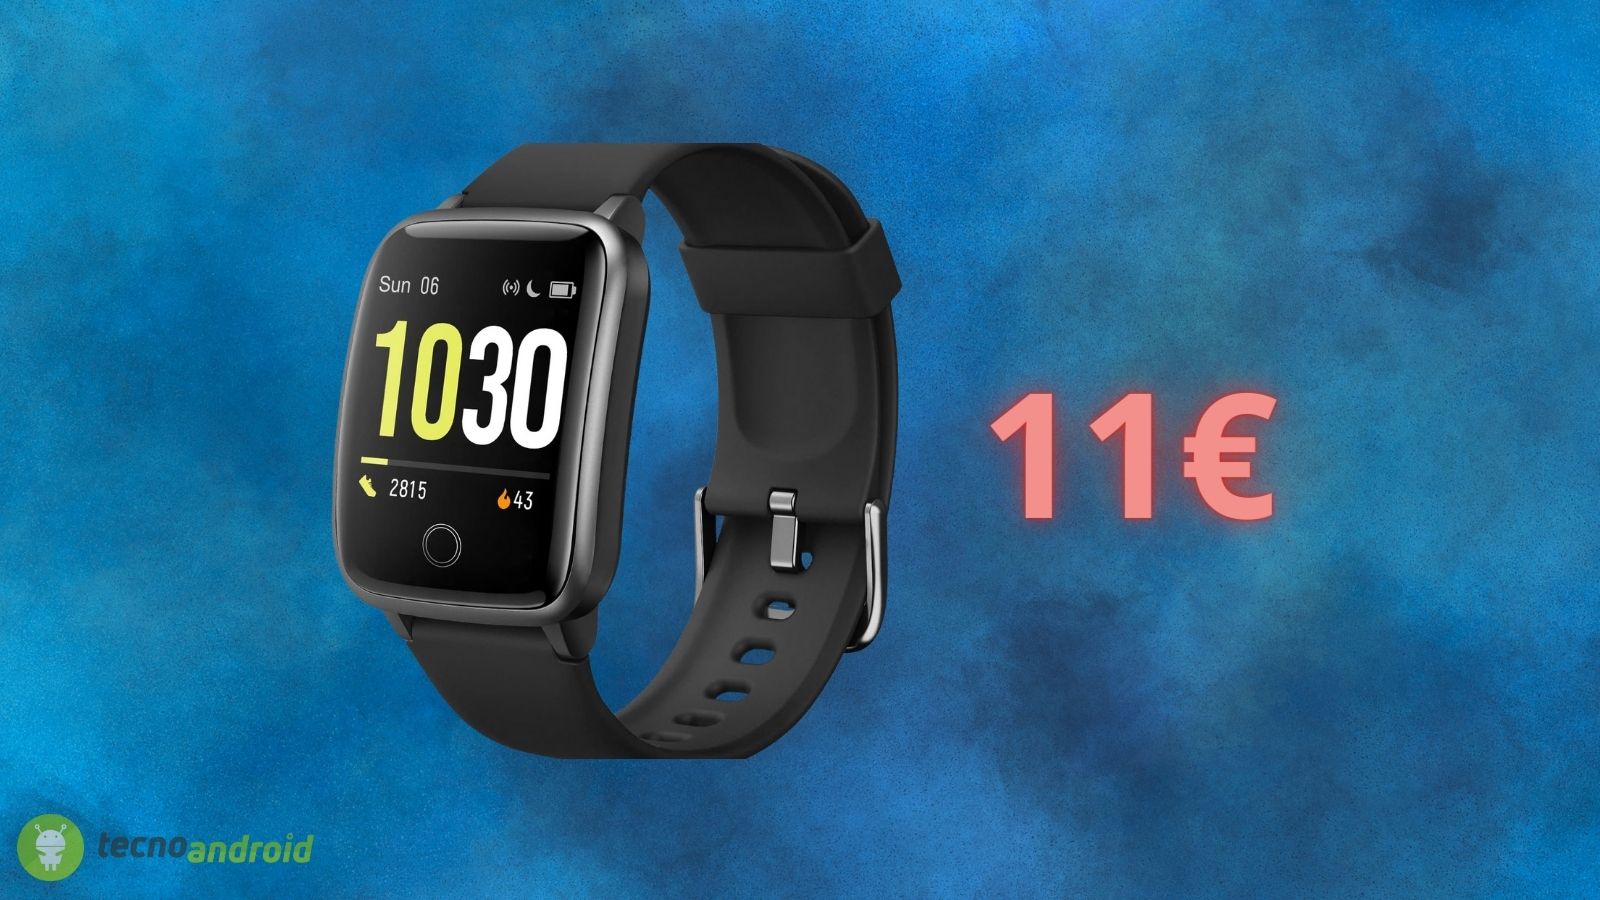 Smartwatch a 11€: il prezzo CROLLA su AMAZON per poco tempo